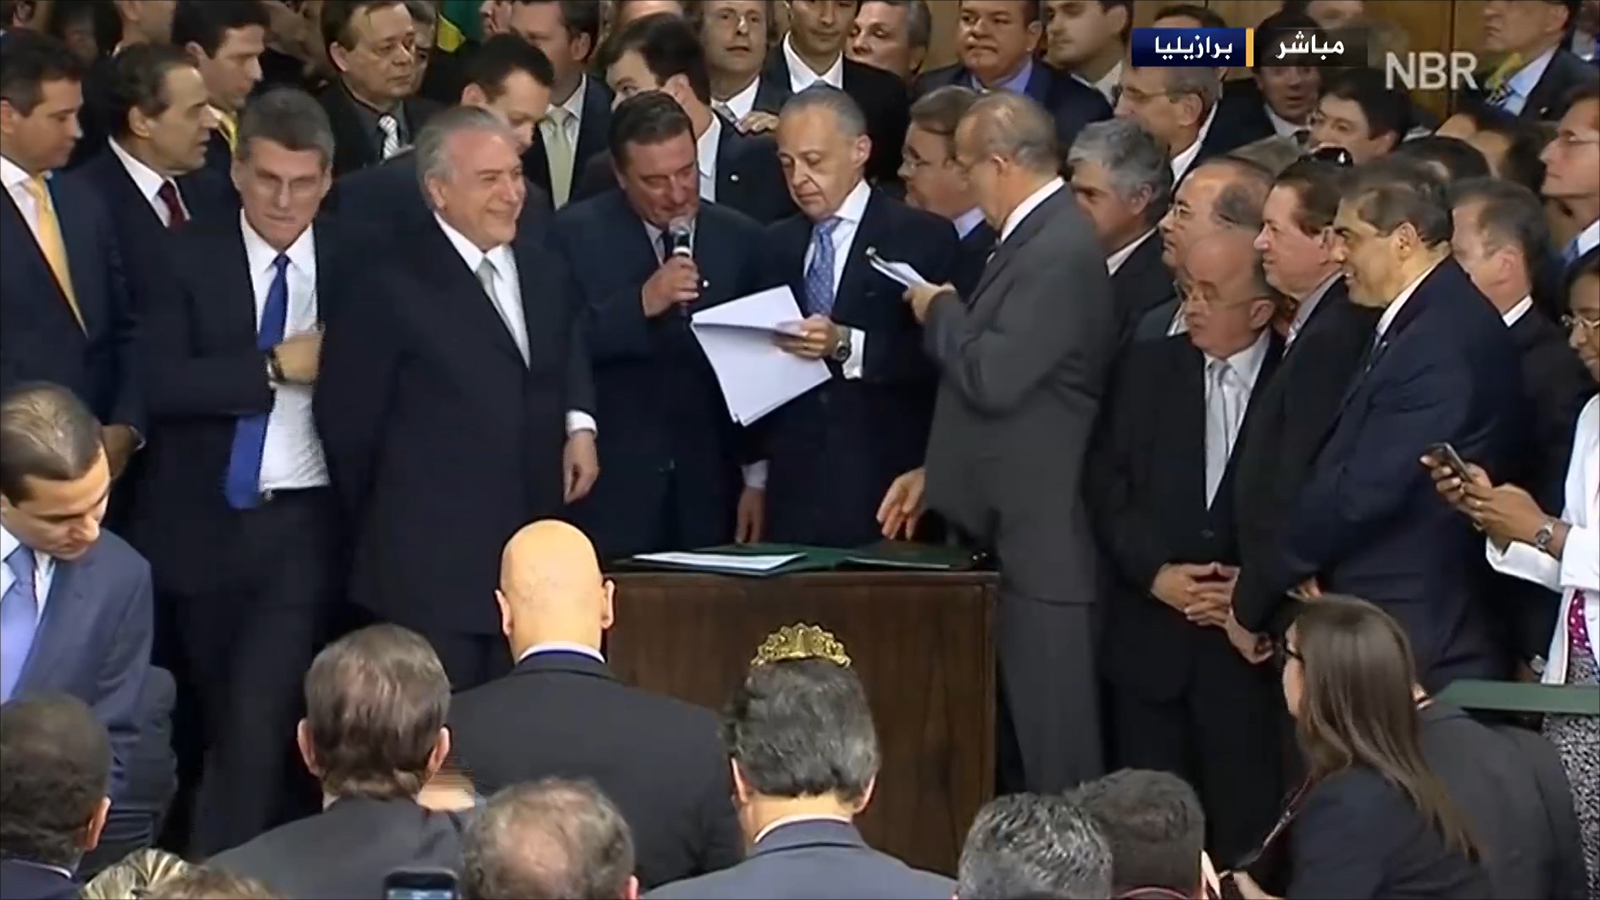 سارع رئيس البرازيل الحالي ميشال تامر إلى استرضاء حلفائه الأميركيين وتسليمهم مفاتيح الاقتصاد من خلال تعيين إيان غولدفاغن